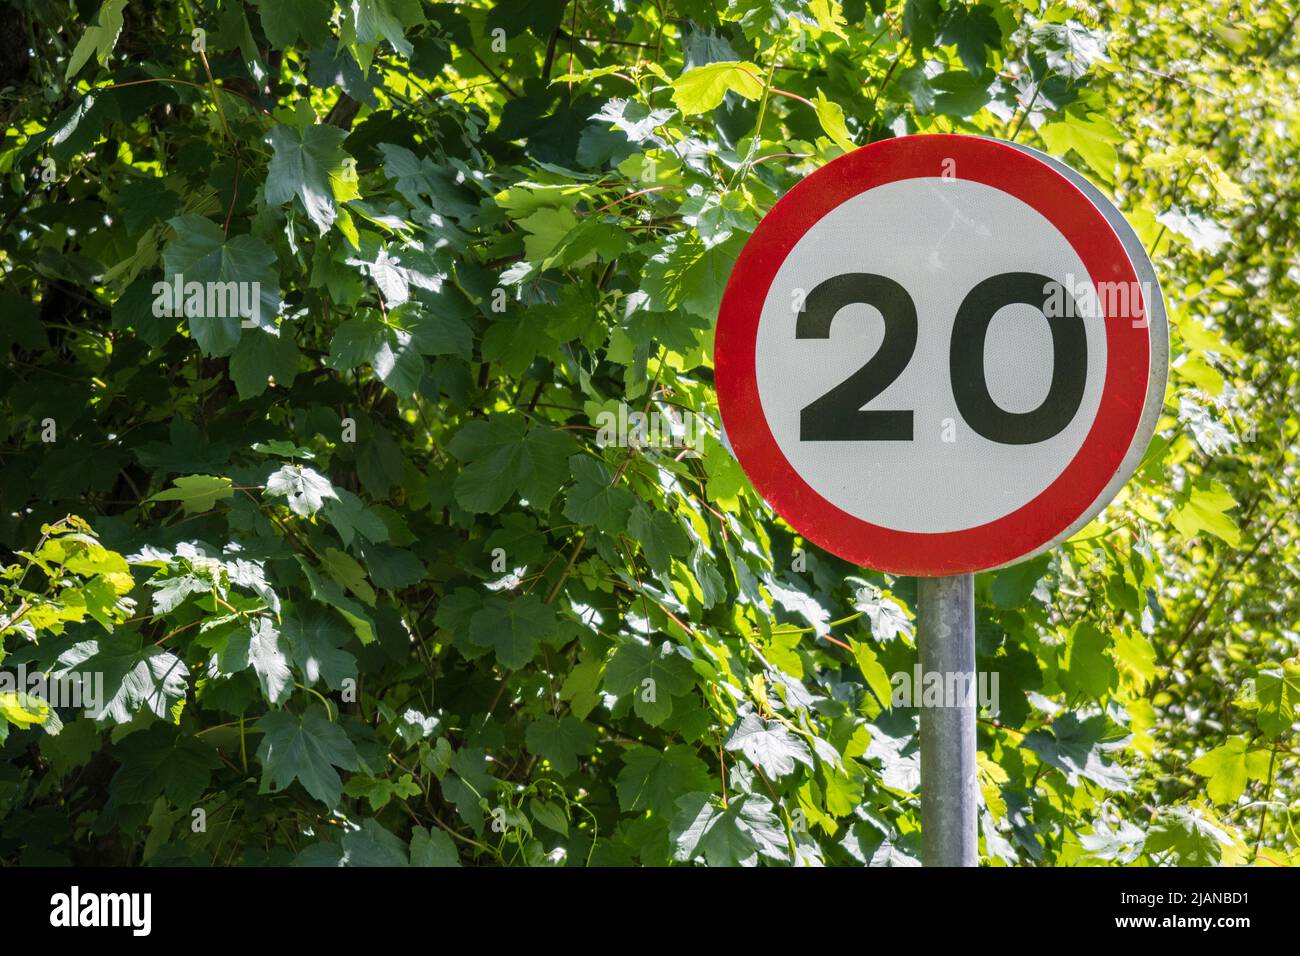 Señal de carretera que indica el límite de velocidad de 20 MPH o 20 km por hora. Número par, reglas de la carretera, seguir la metáfora de las reglas, señales de carretera Reino Unido, zona de velocidad. Foto de stock